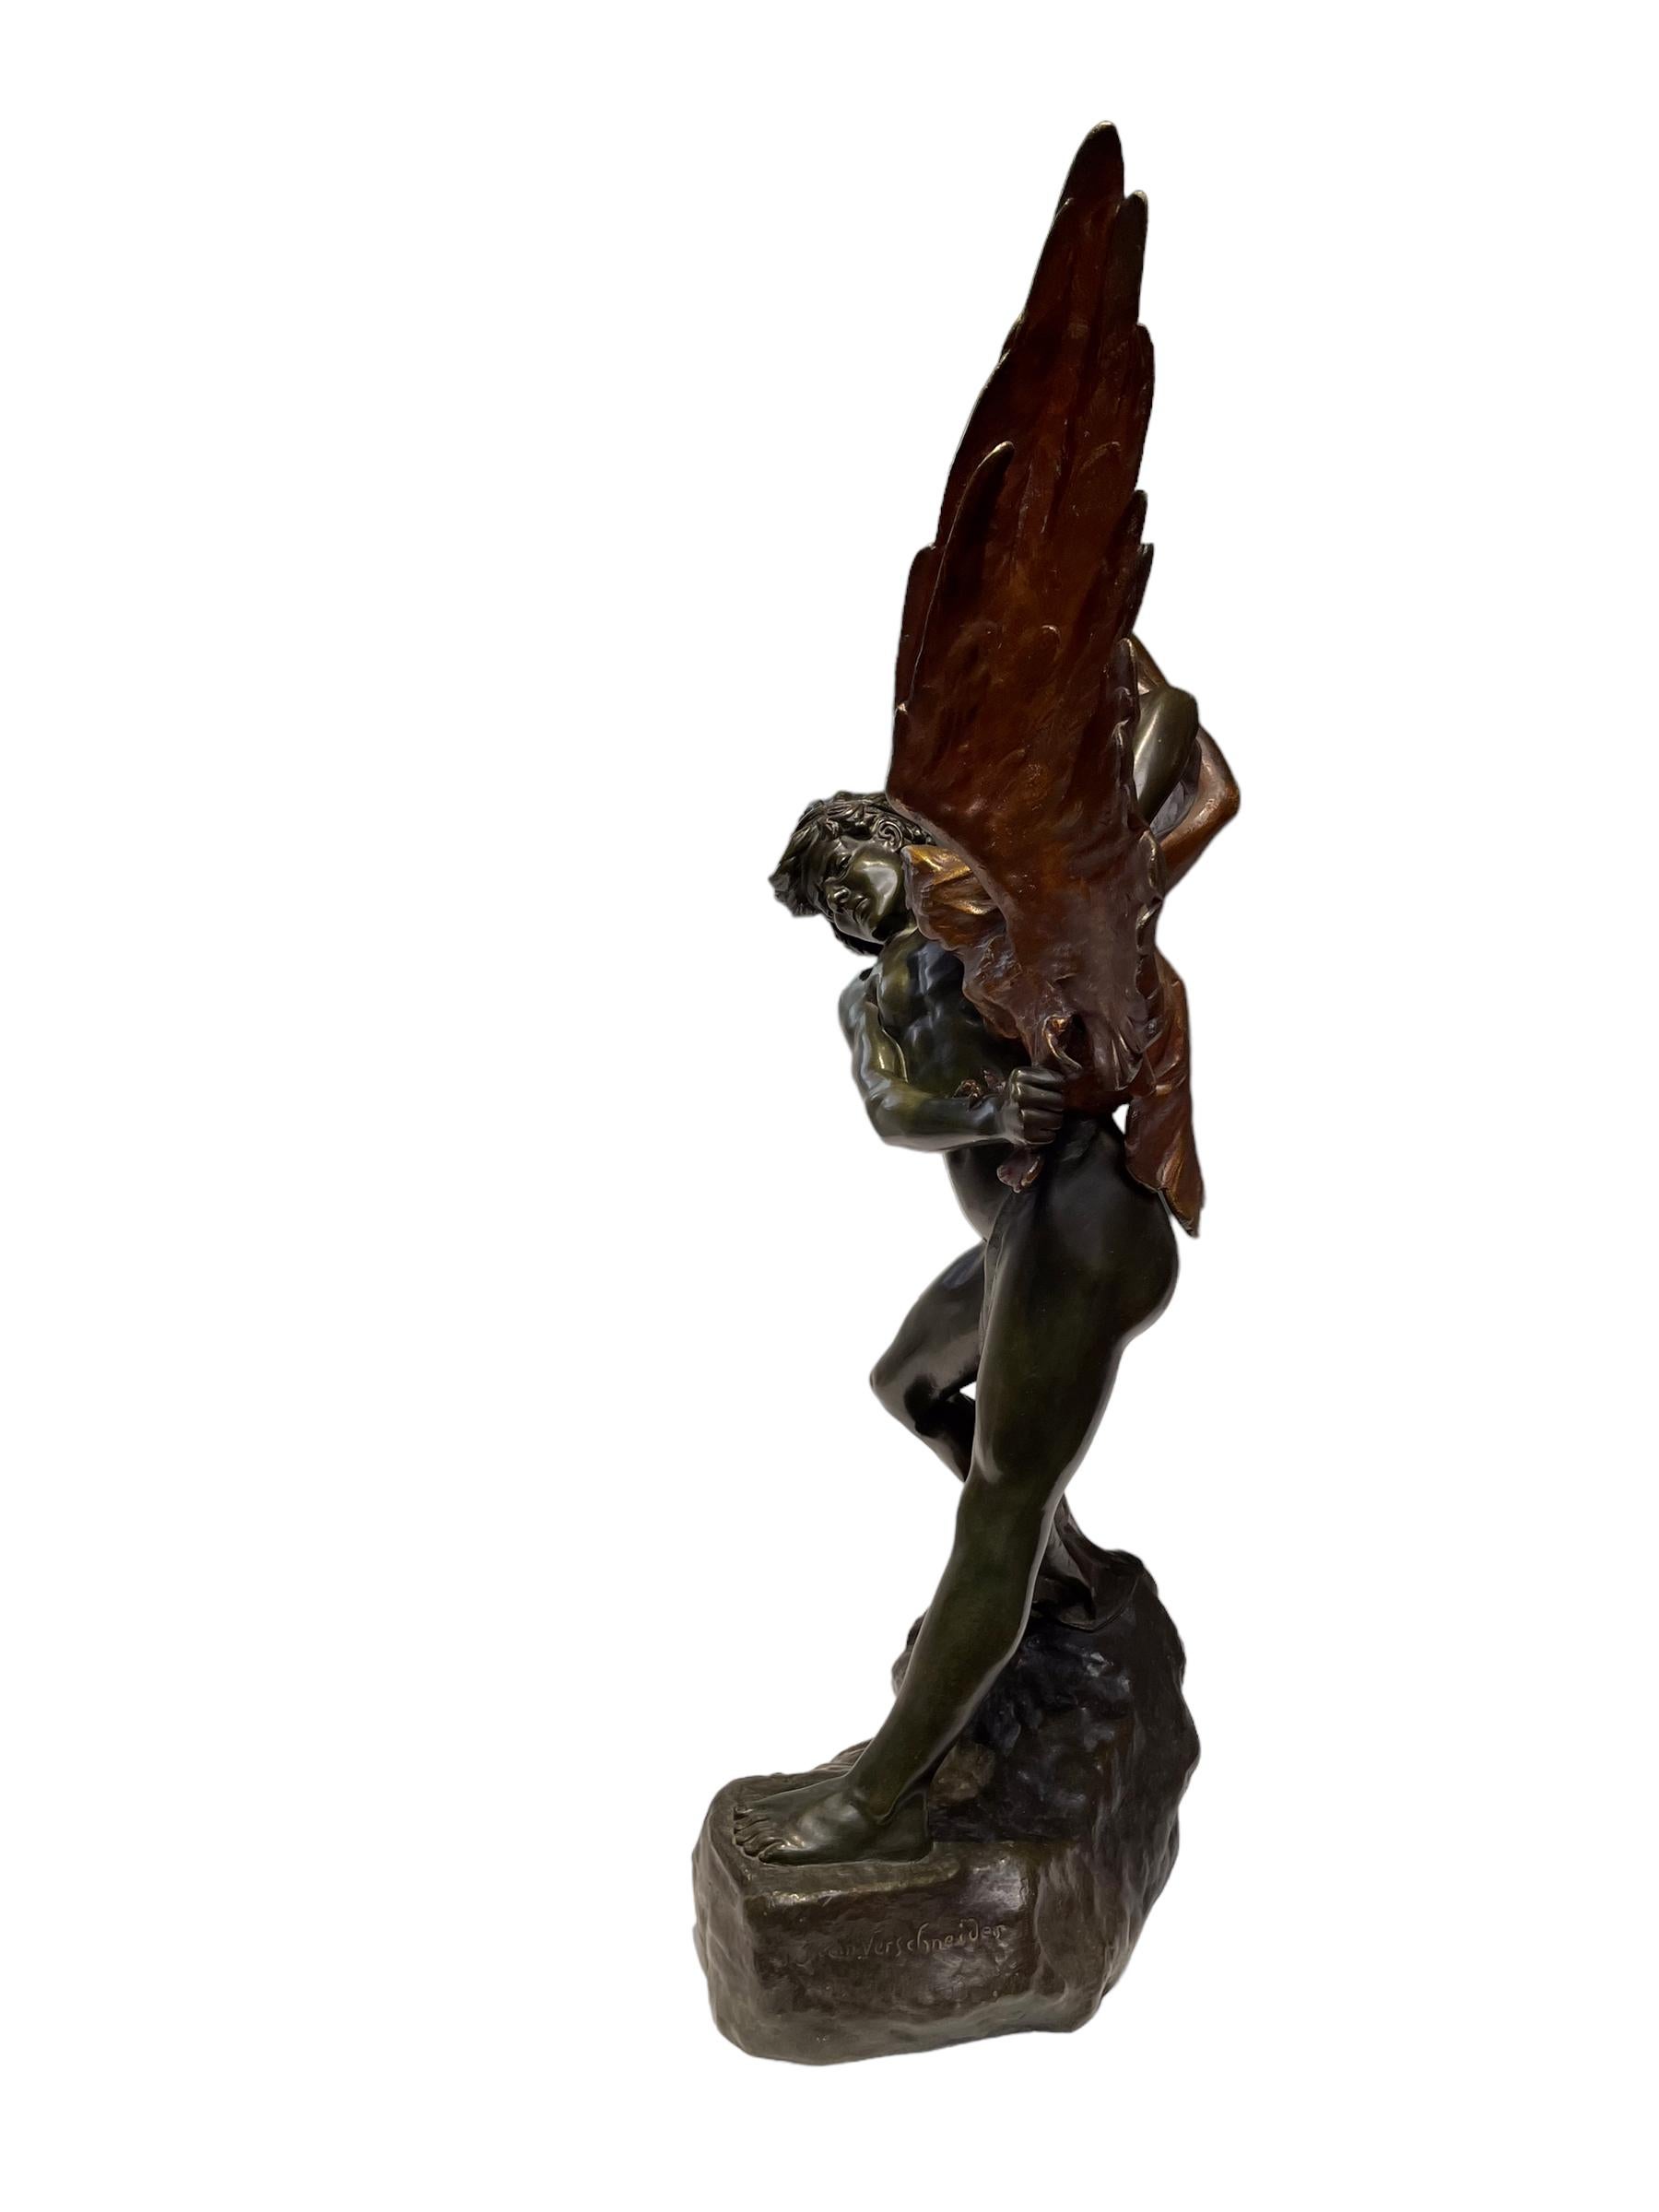 French Bronze Sculpture by Jean Verschneider